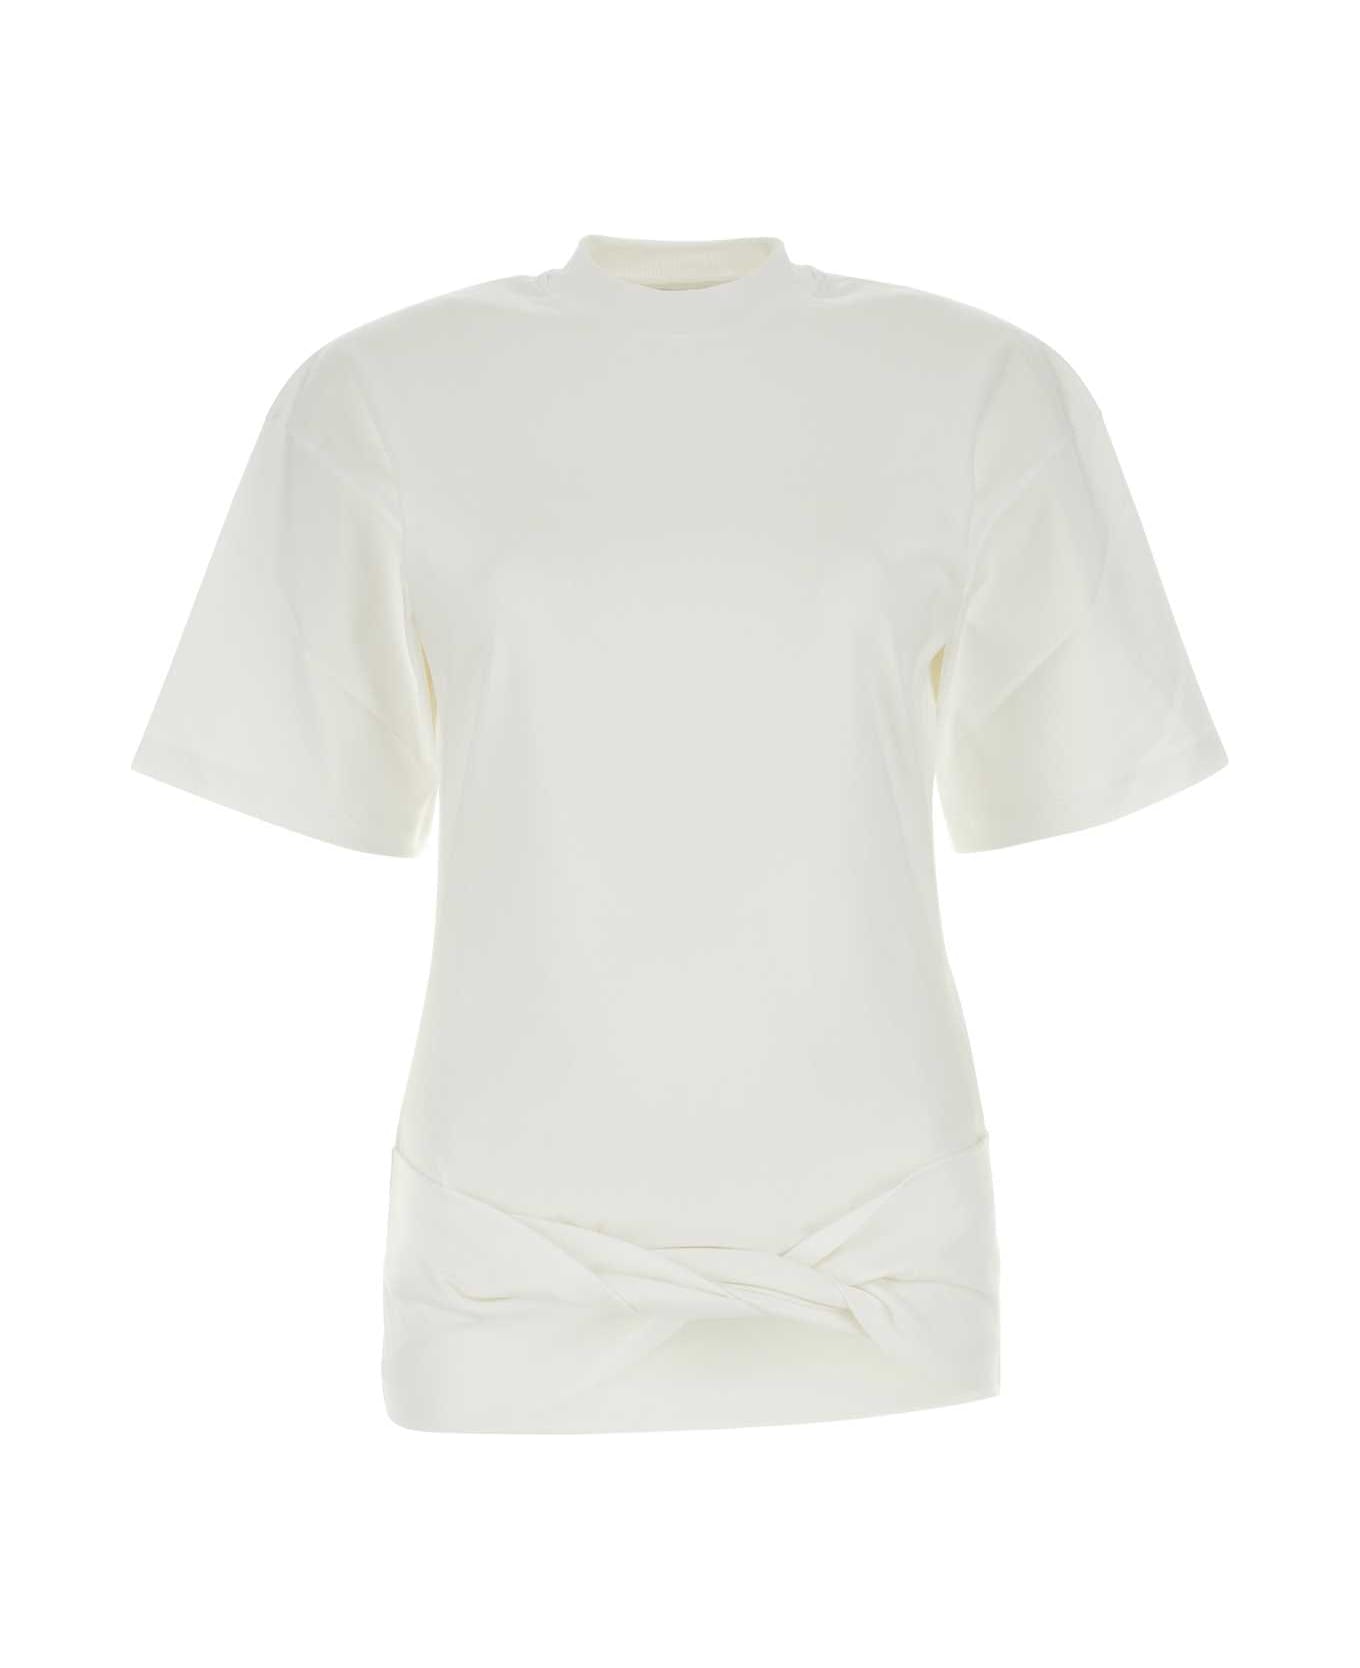 Off-White White Cotton T-shirt - WHITEWHITE Tシャツ